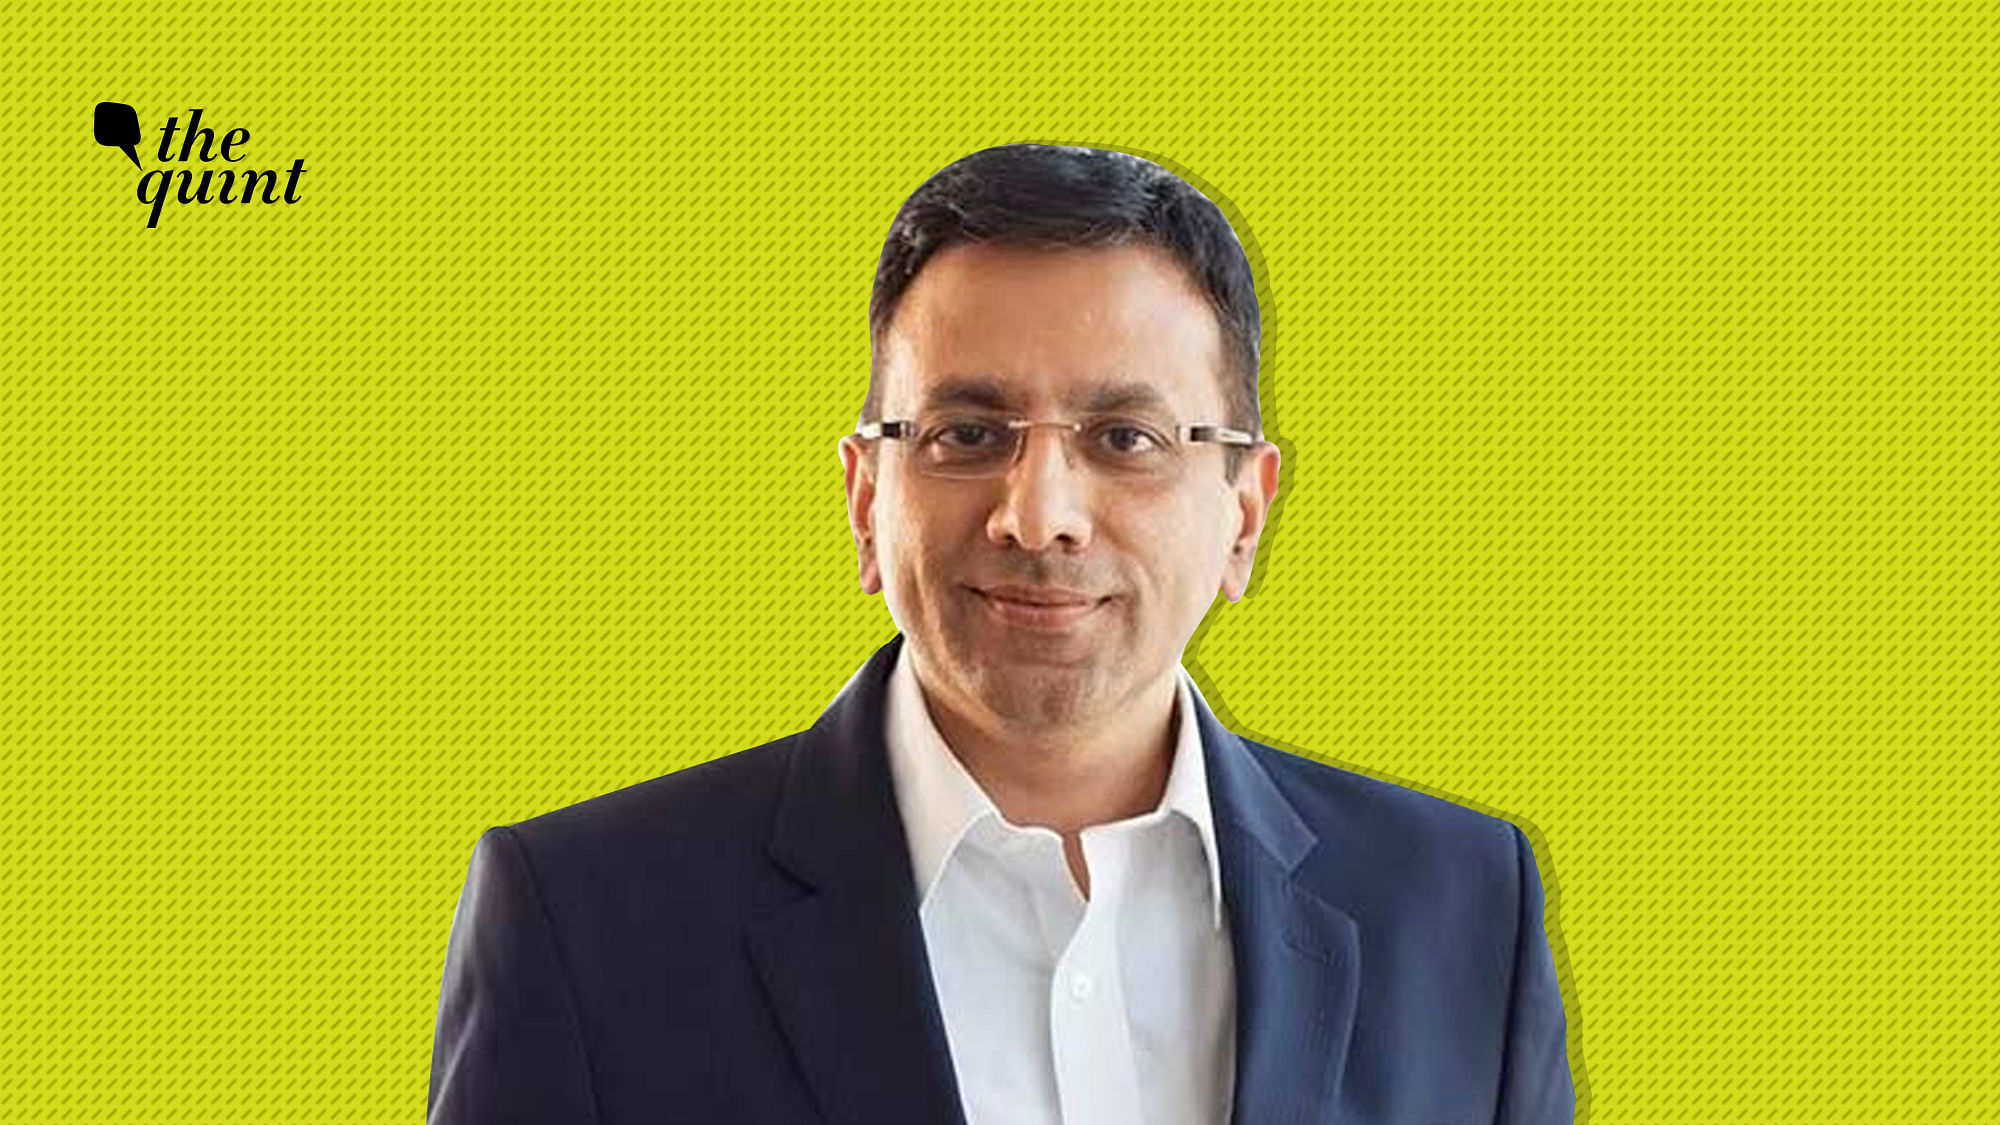 Sanjay Gupta was previously the managing director at Star at Disney.